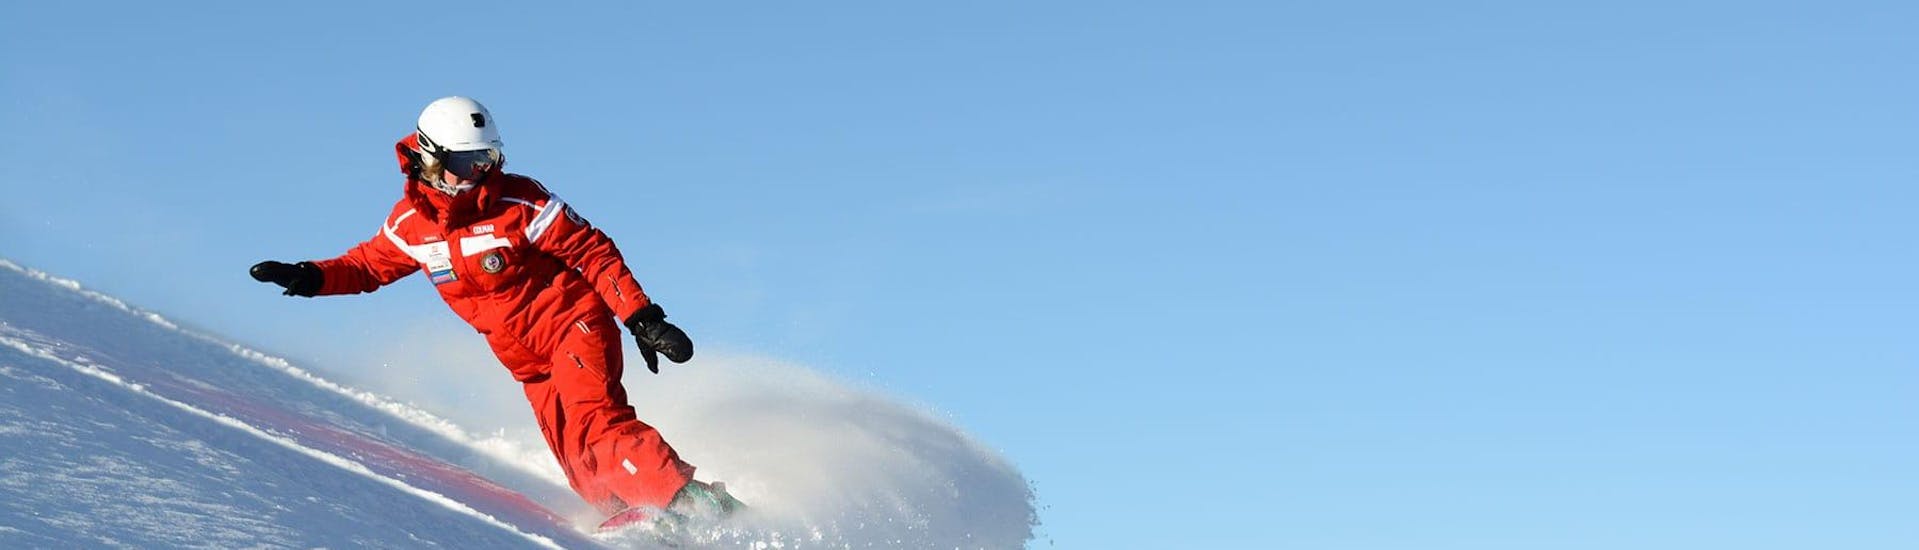 Un istruttore di snowboard si allena sulle fantastiche piste della Val Gardena al mattino presto. Giornata perfetta per una delle lezioni di snowboard per bambini e adulti.